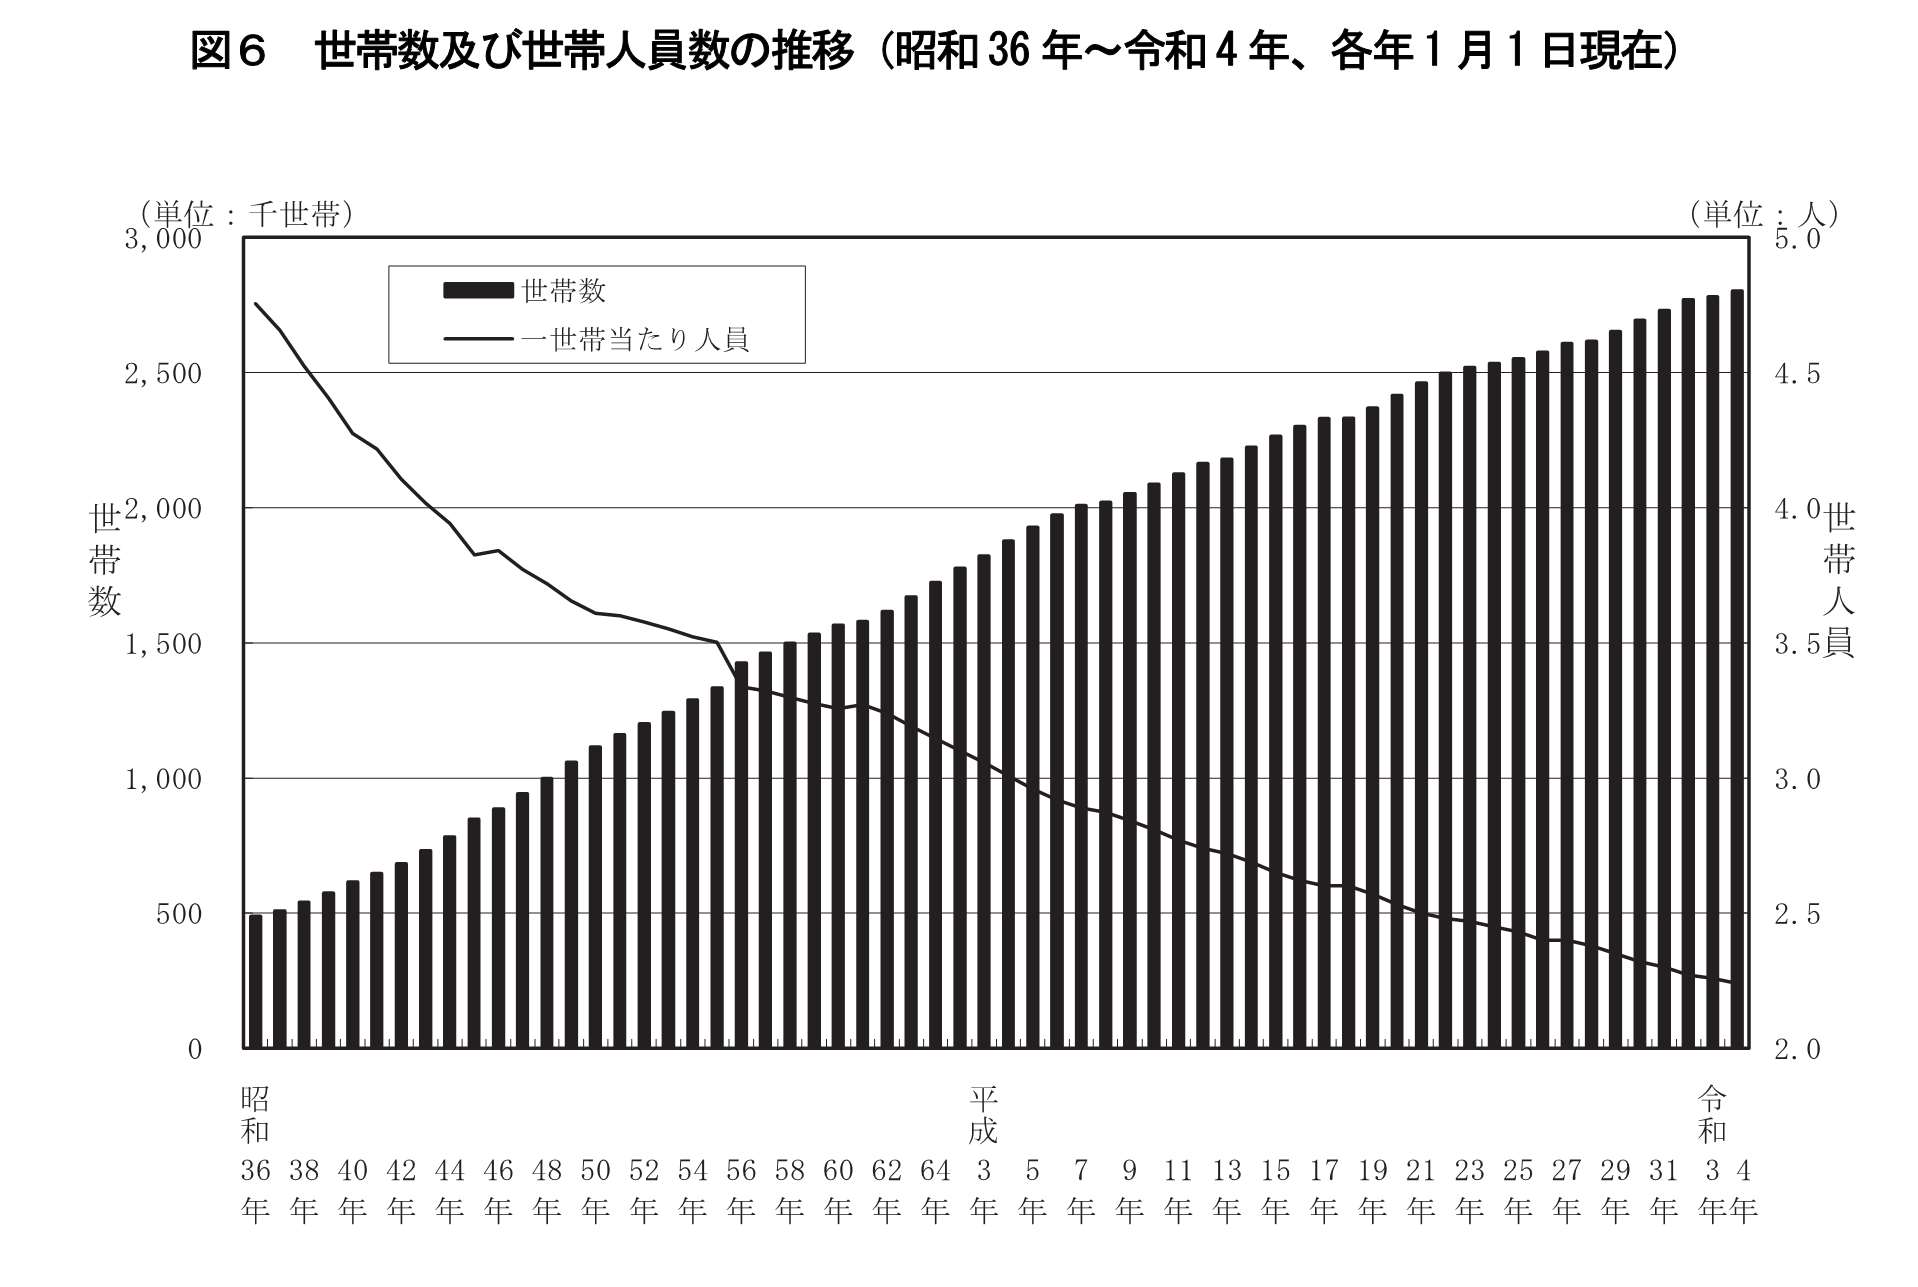 図6.世帯数及び世帯人員数の推移（昭和36年～令和4年、各年1月1日現在）